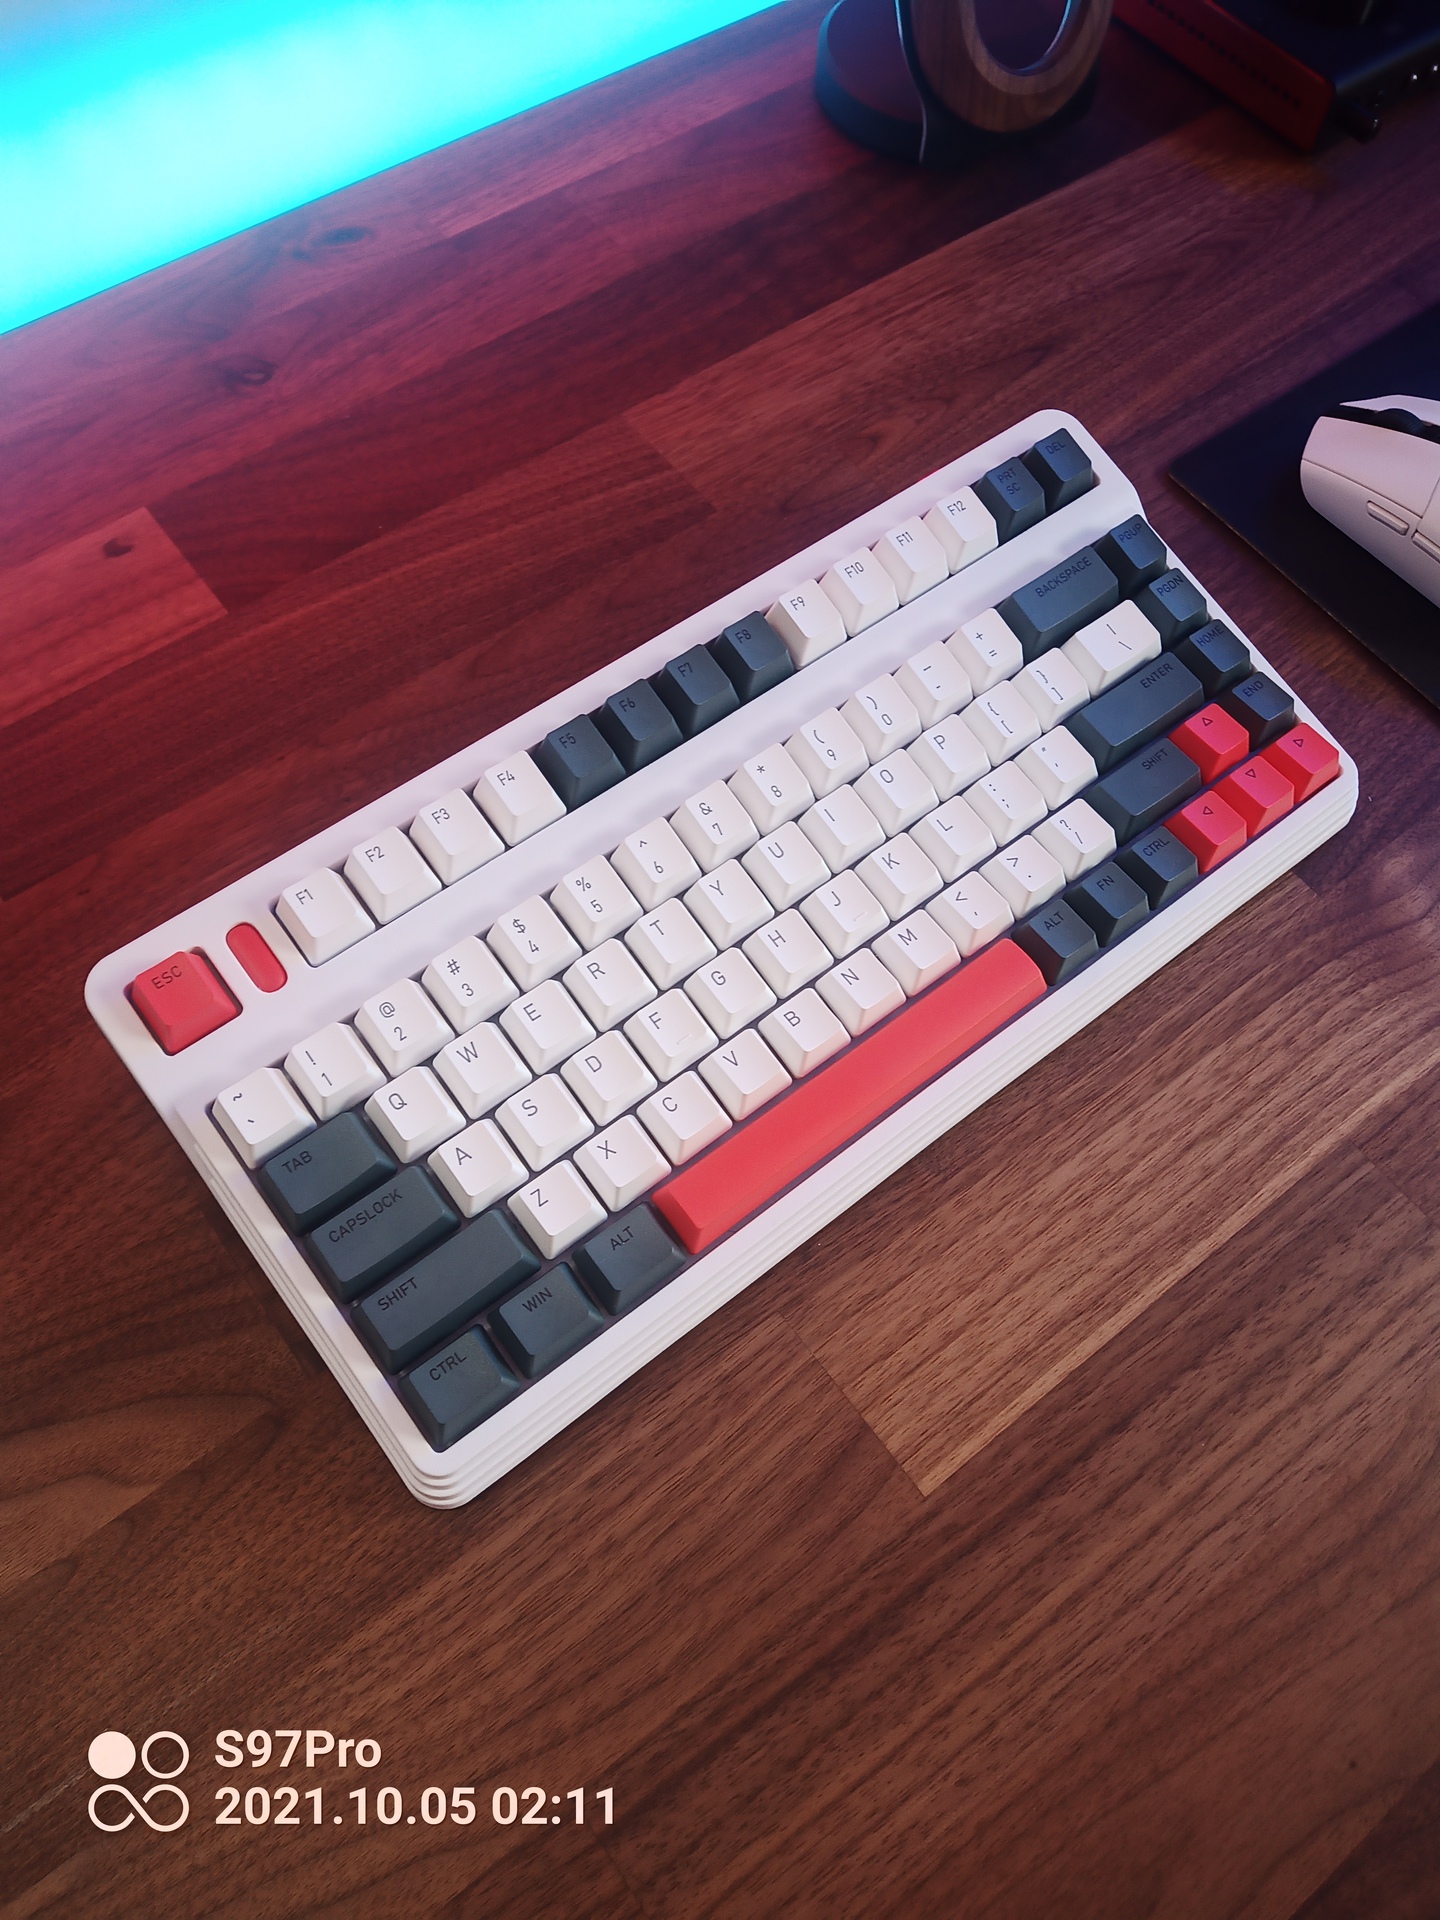 Photo of keyboard taken on Doogee S97 Pro